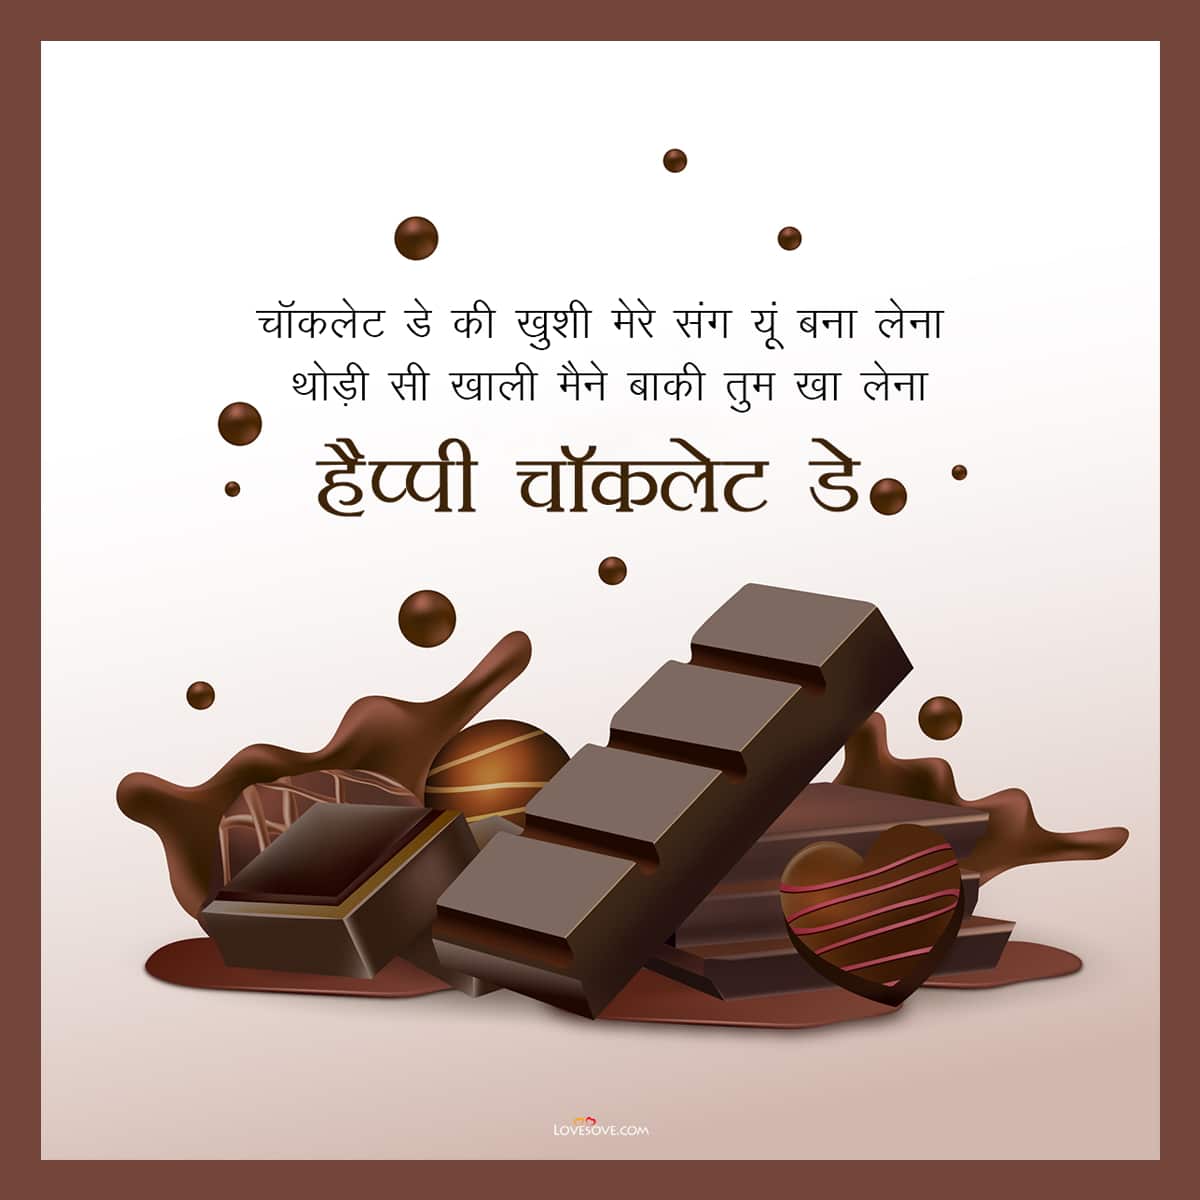 Happy chocolate day hindi wishes in hindi, chocolate day hindi wishes for friend 